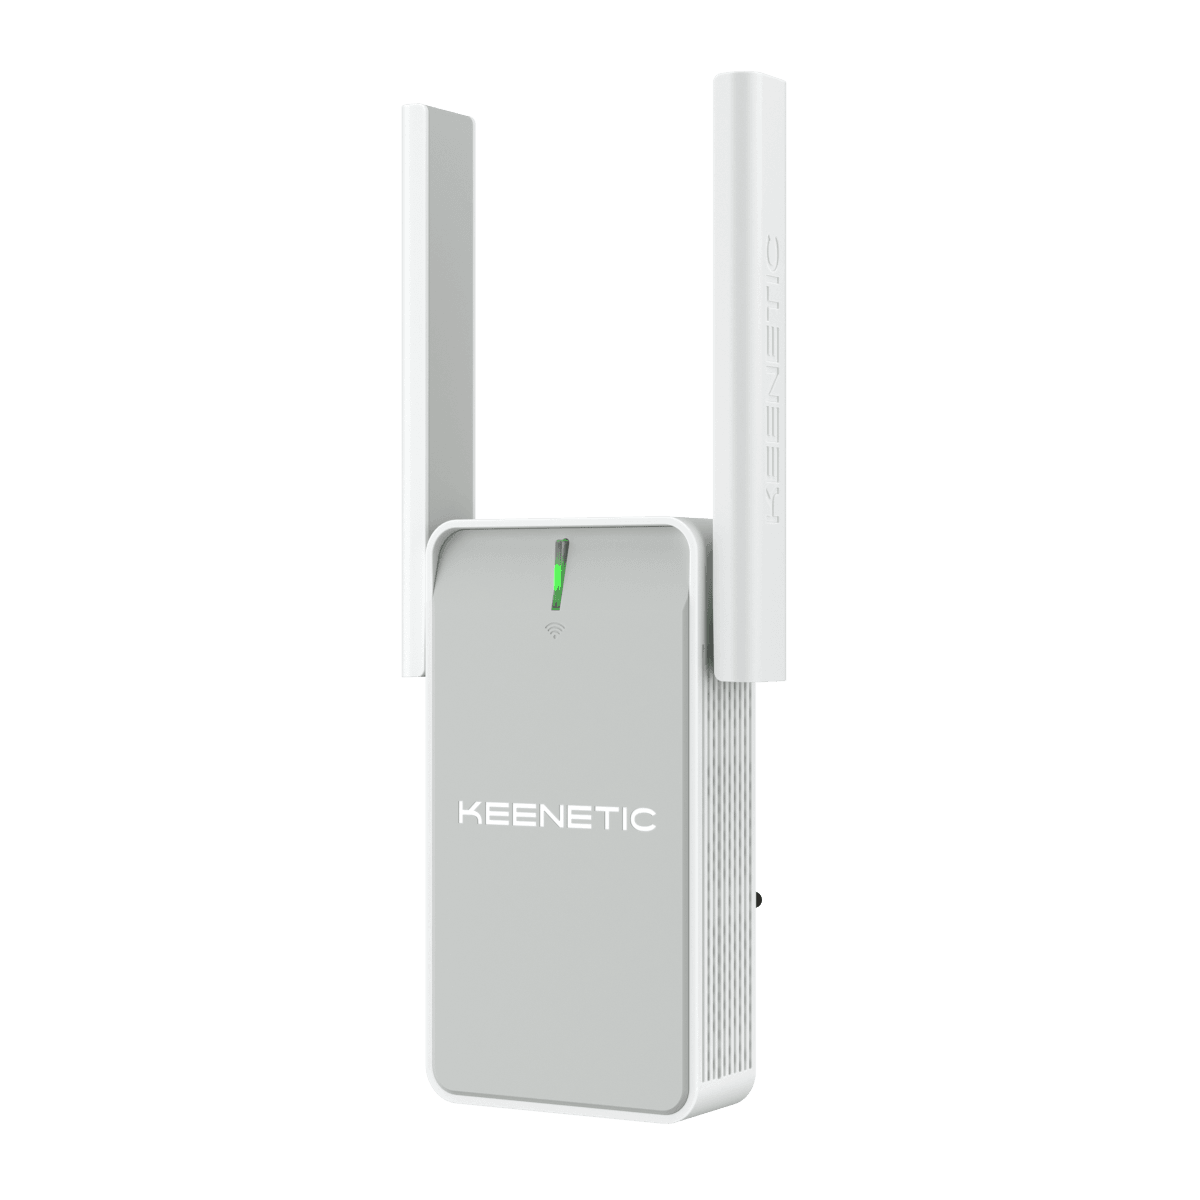 Ретранслятор Wi-Fi сигнала AC1200 FE Keenetic Buddy 5 KN-3311 Wi-Fi 5